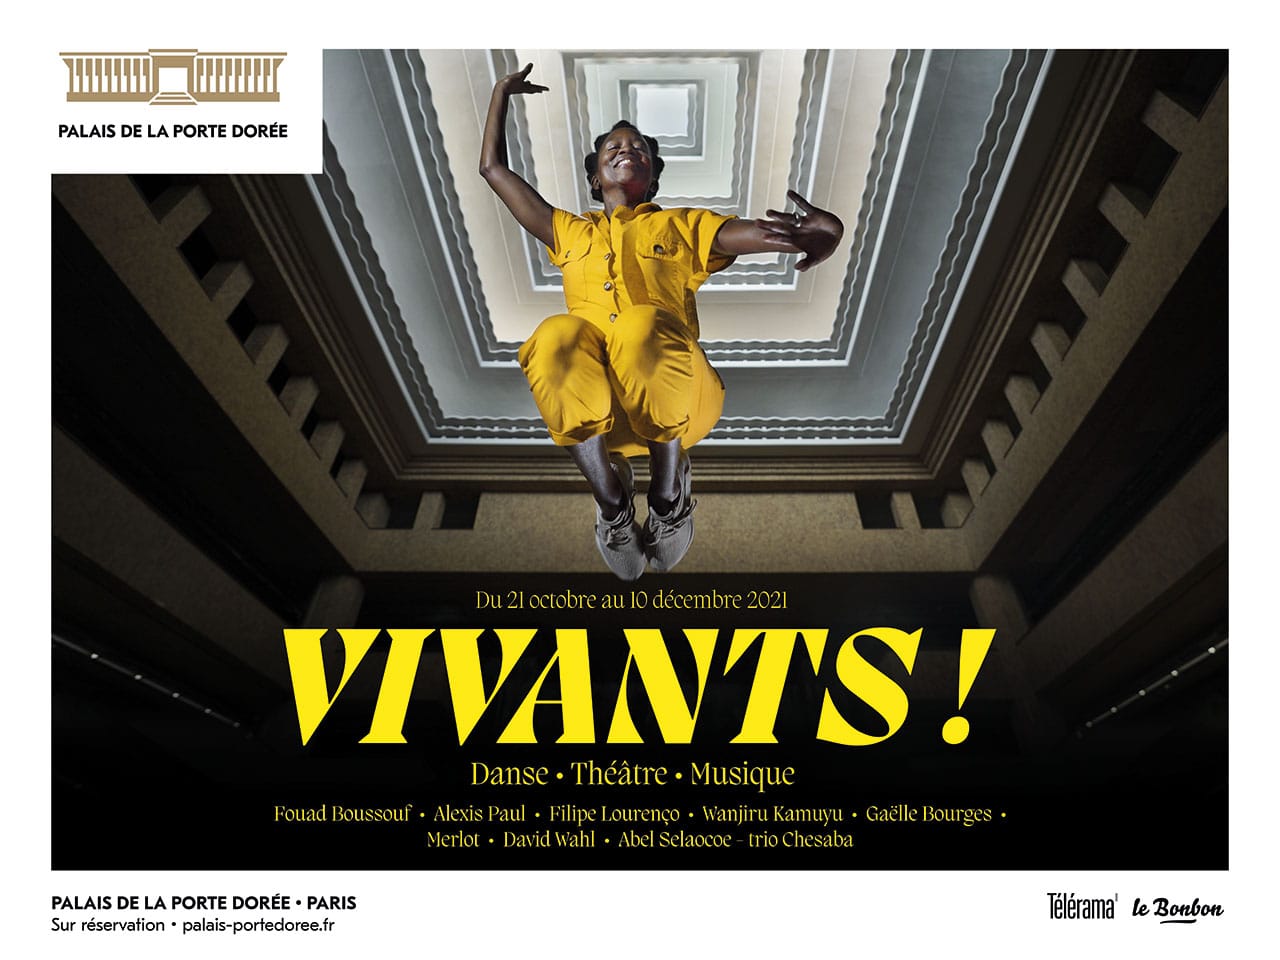 VIVANTS ! : un nouveau temps fort spectacle vivant au Palais de la porte Dorée